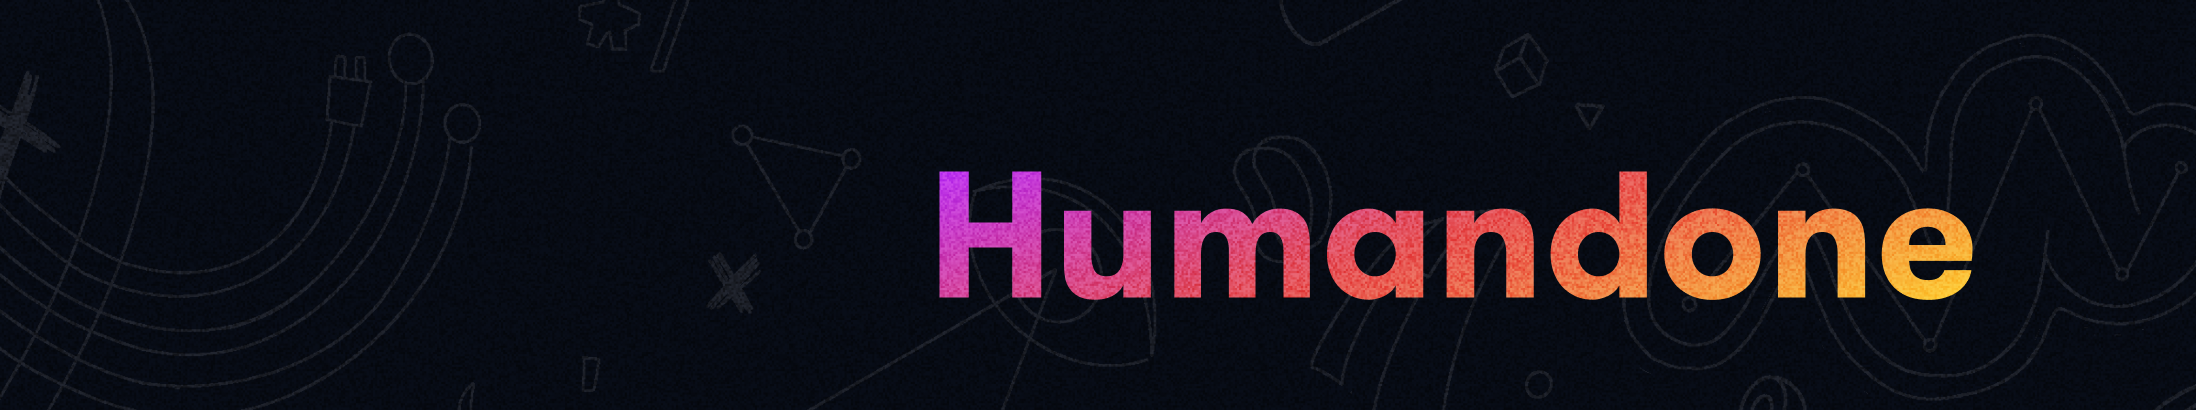 Profil-Banner von Humandone Team